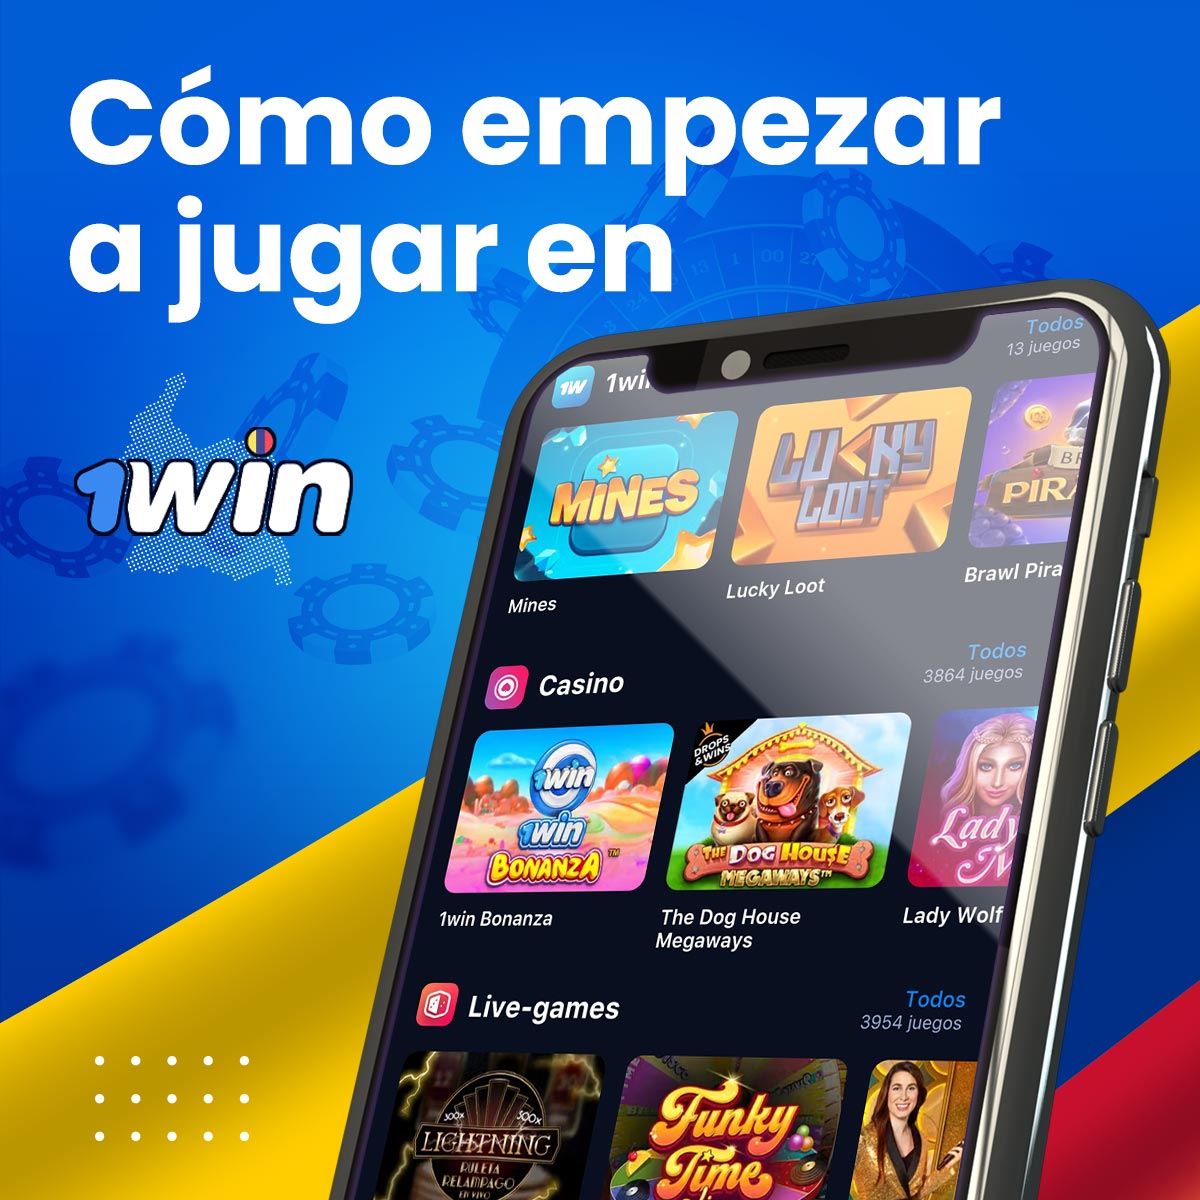 1win es el mejor casino online de Colombia con una gran selección de juegos de azar